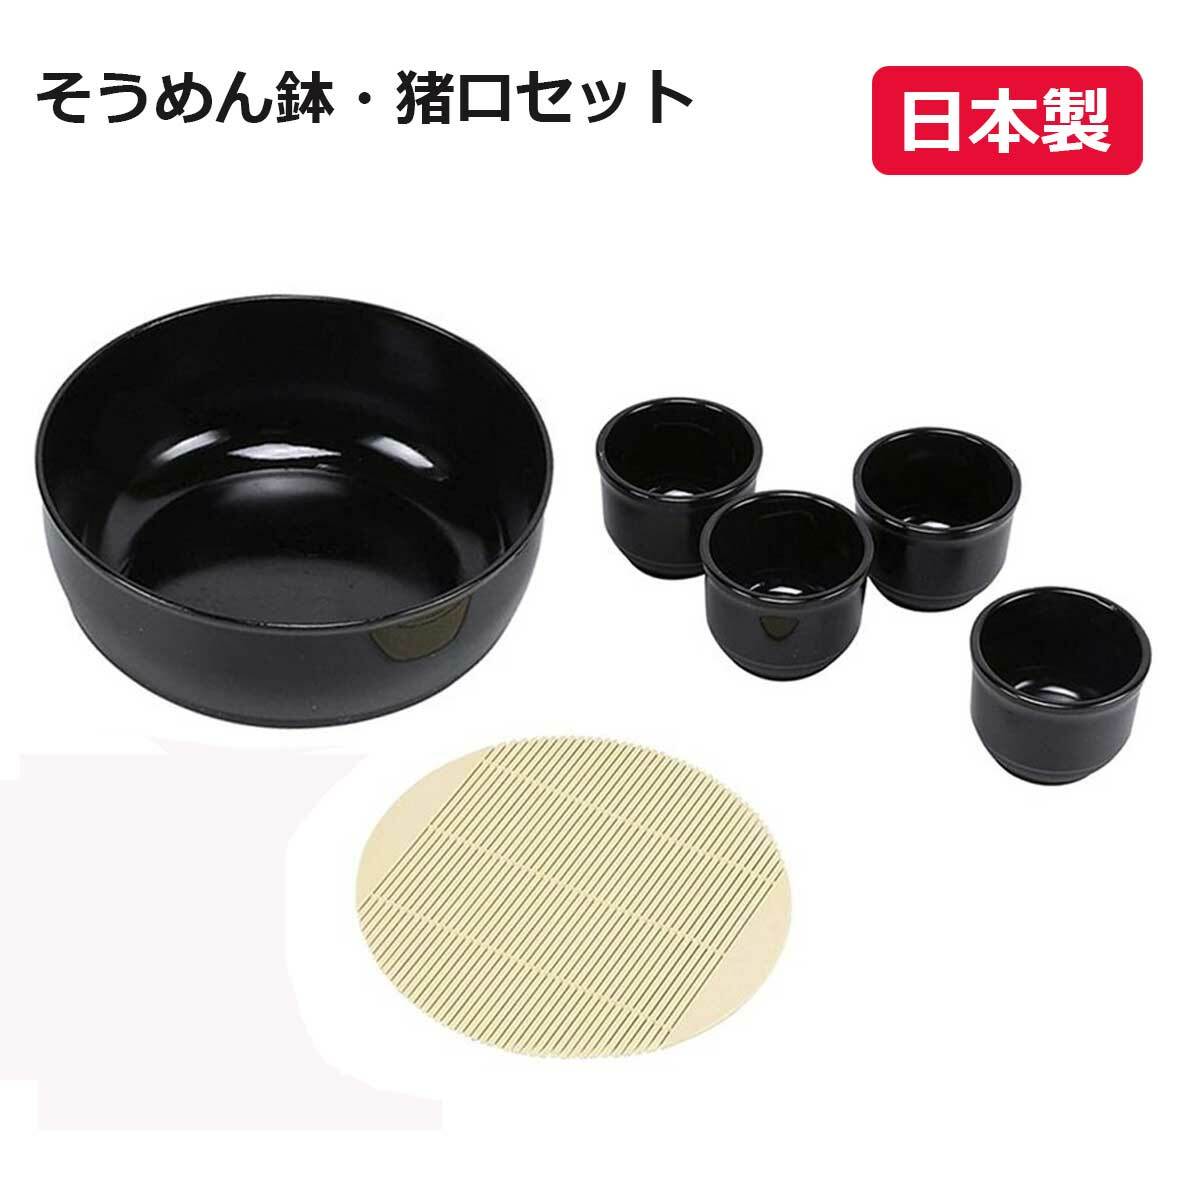 日本製 そうめん鉢 つゆ入れ 4個セット プラスチック すのこ付 素麺 流しそうめん